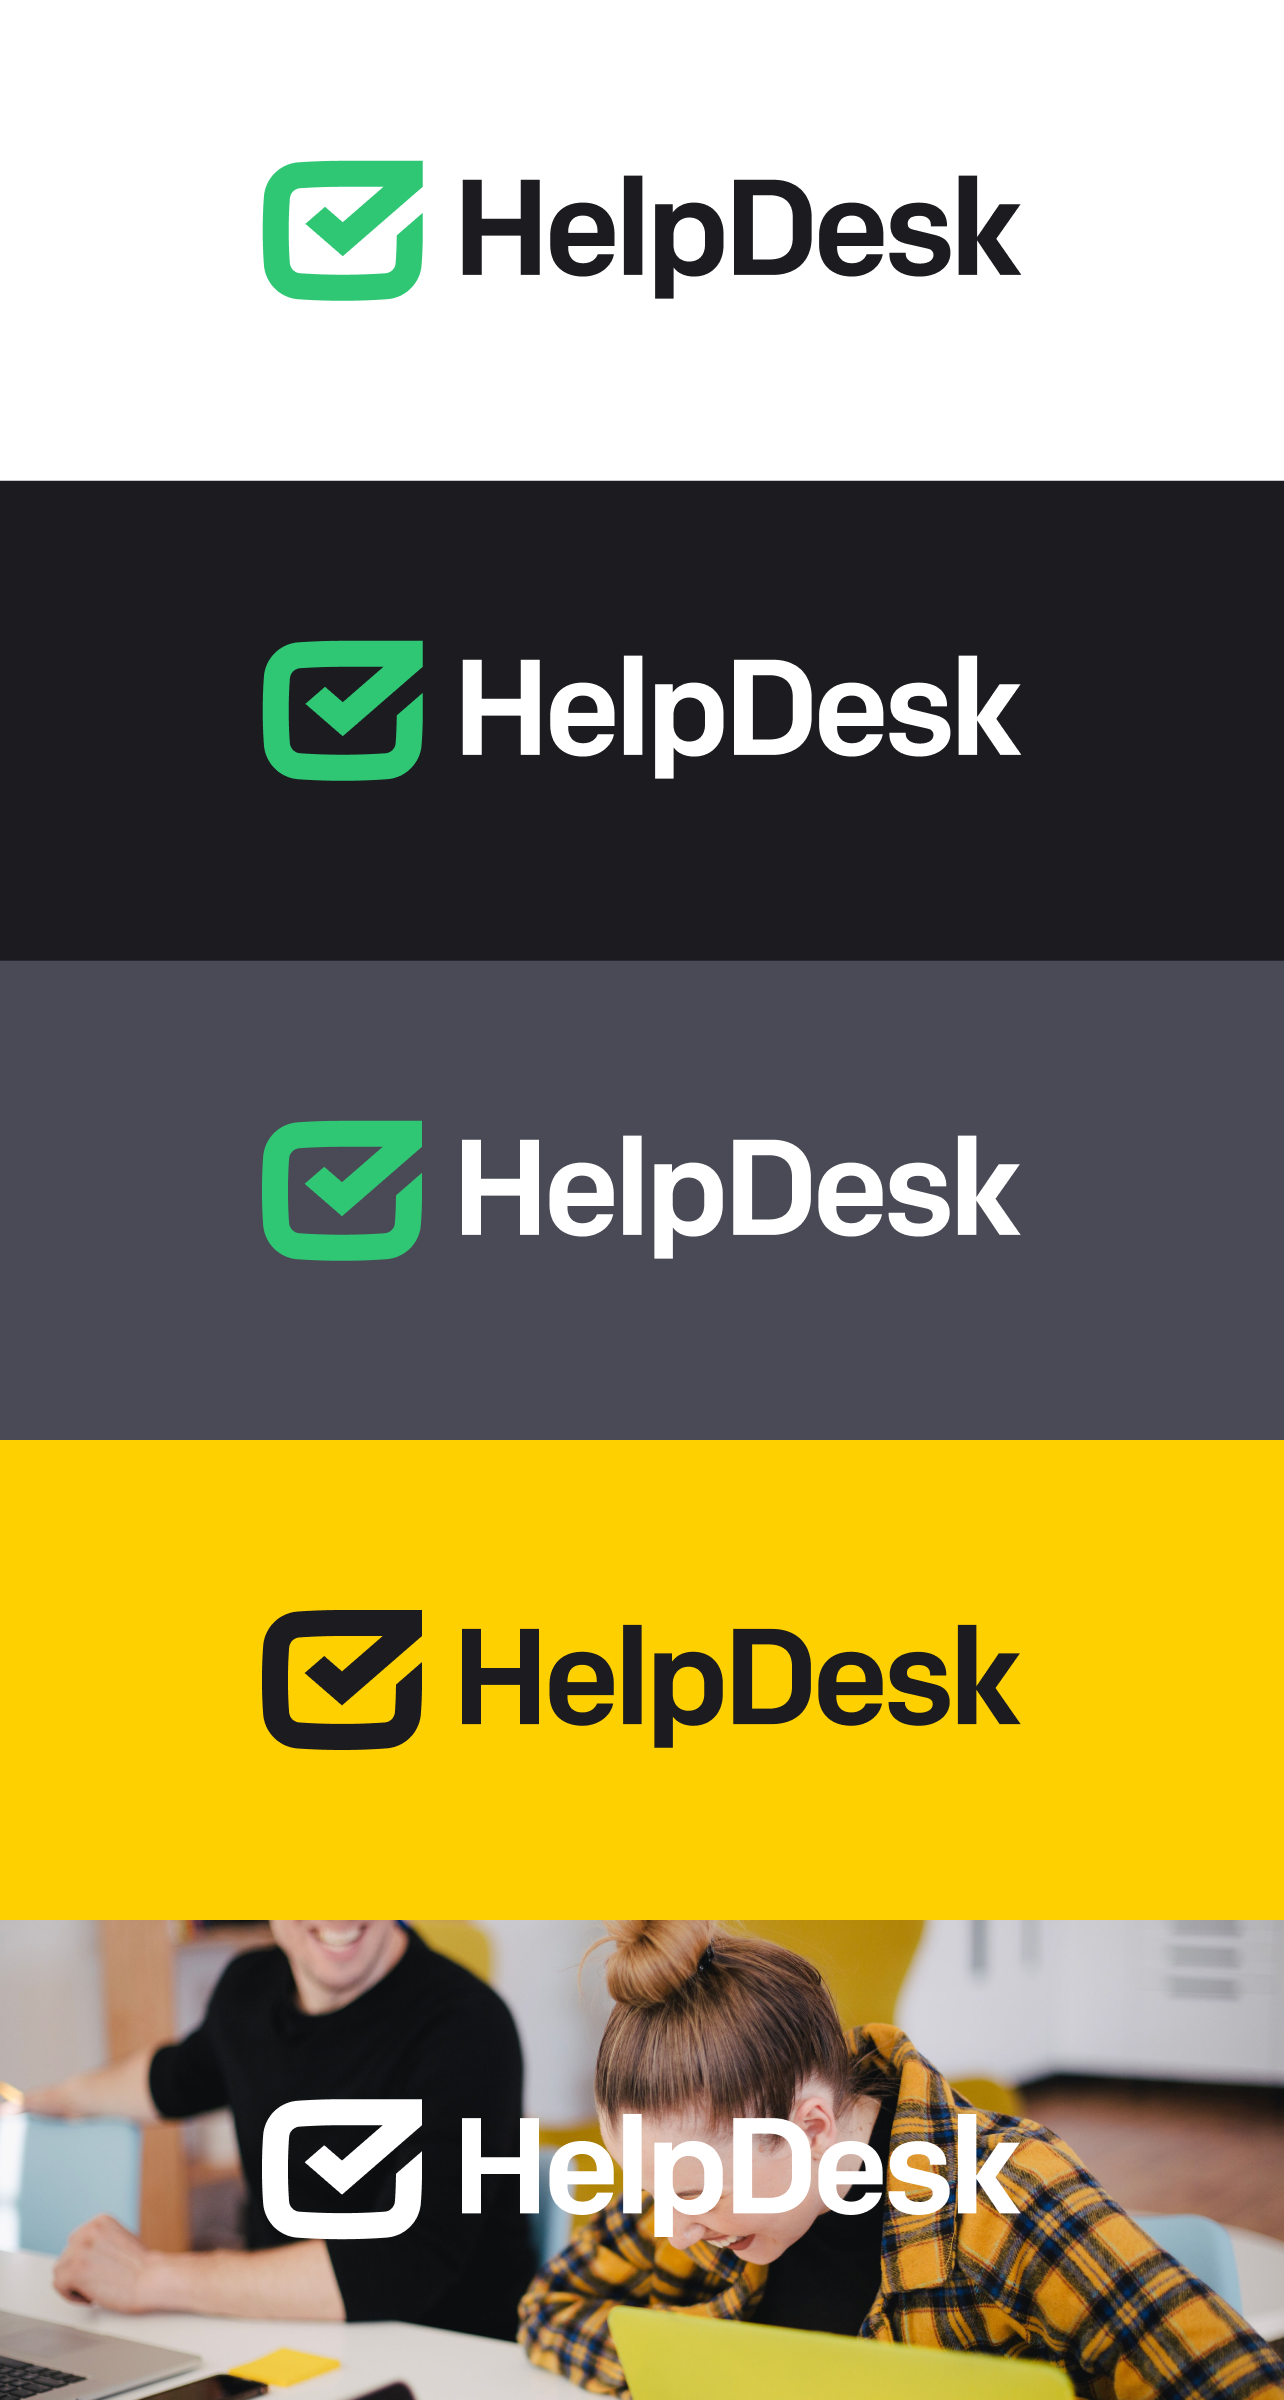 HelpDesk logo background usage